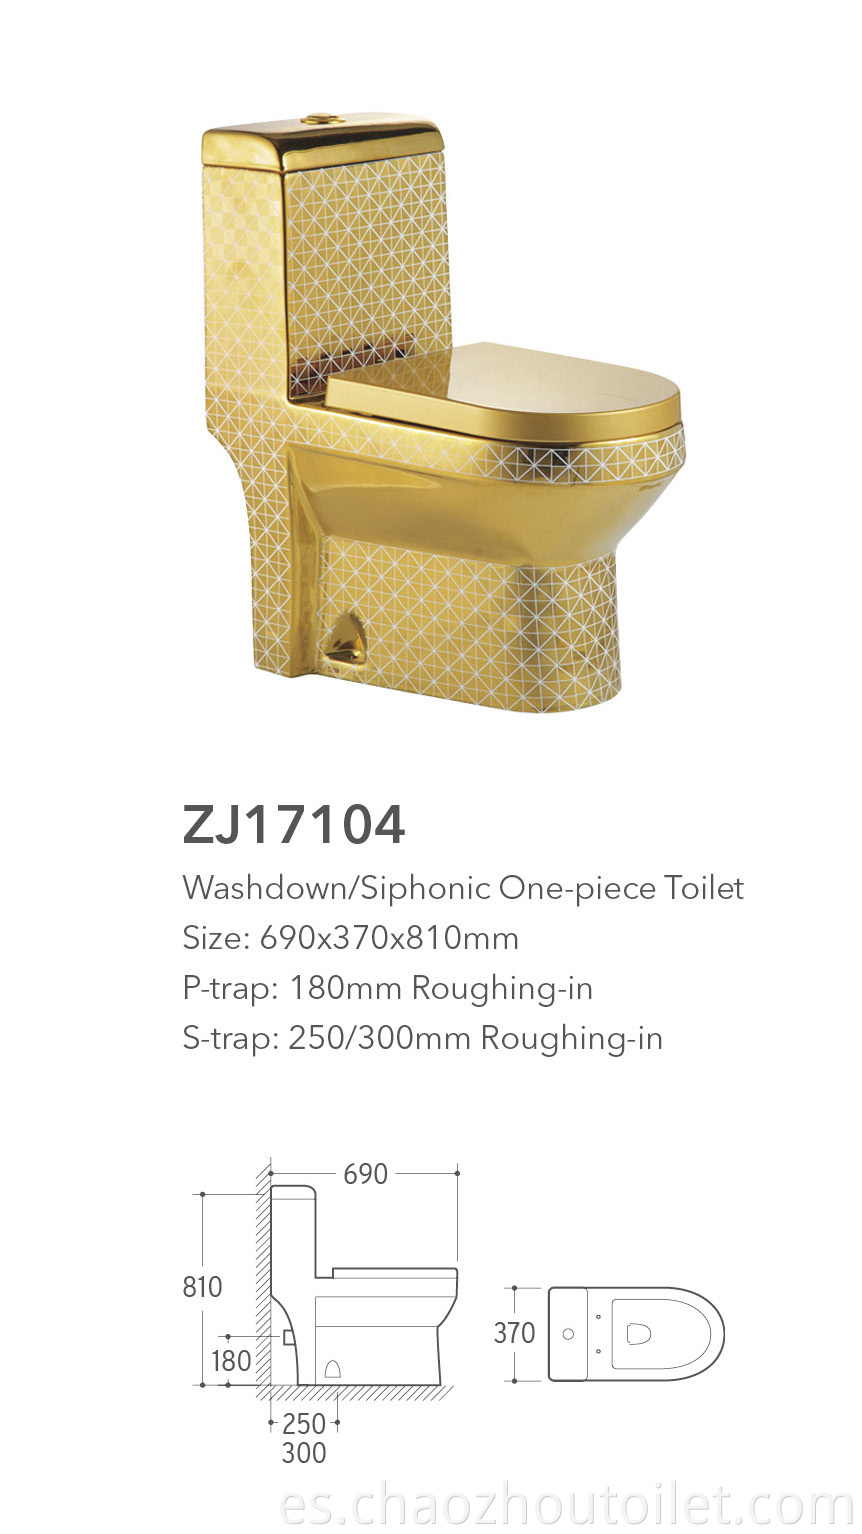 Zj17104 One Piece Toilet